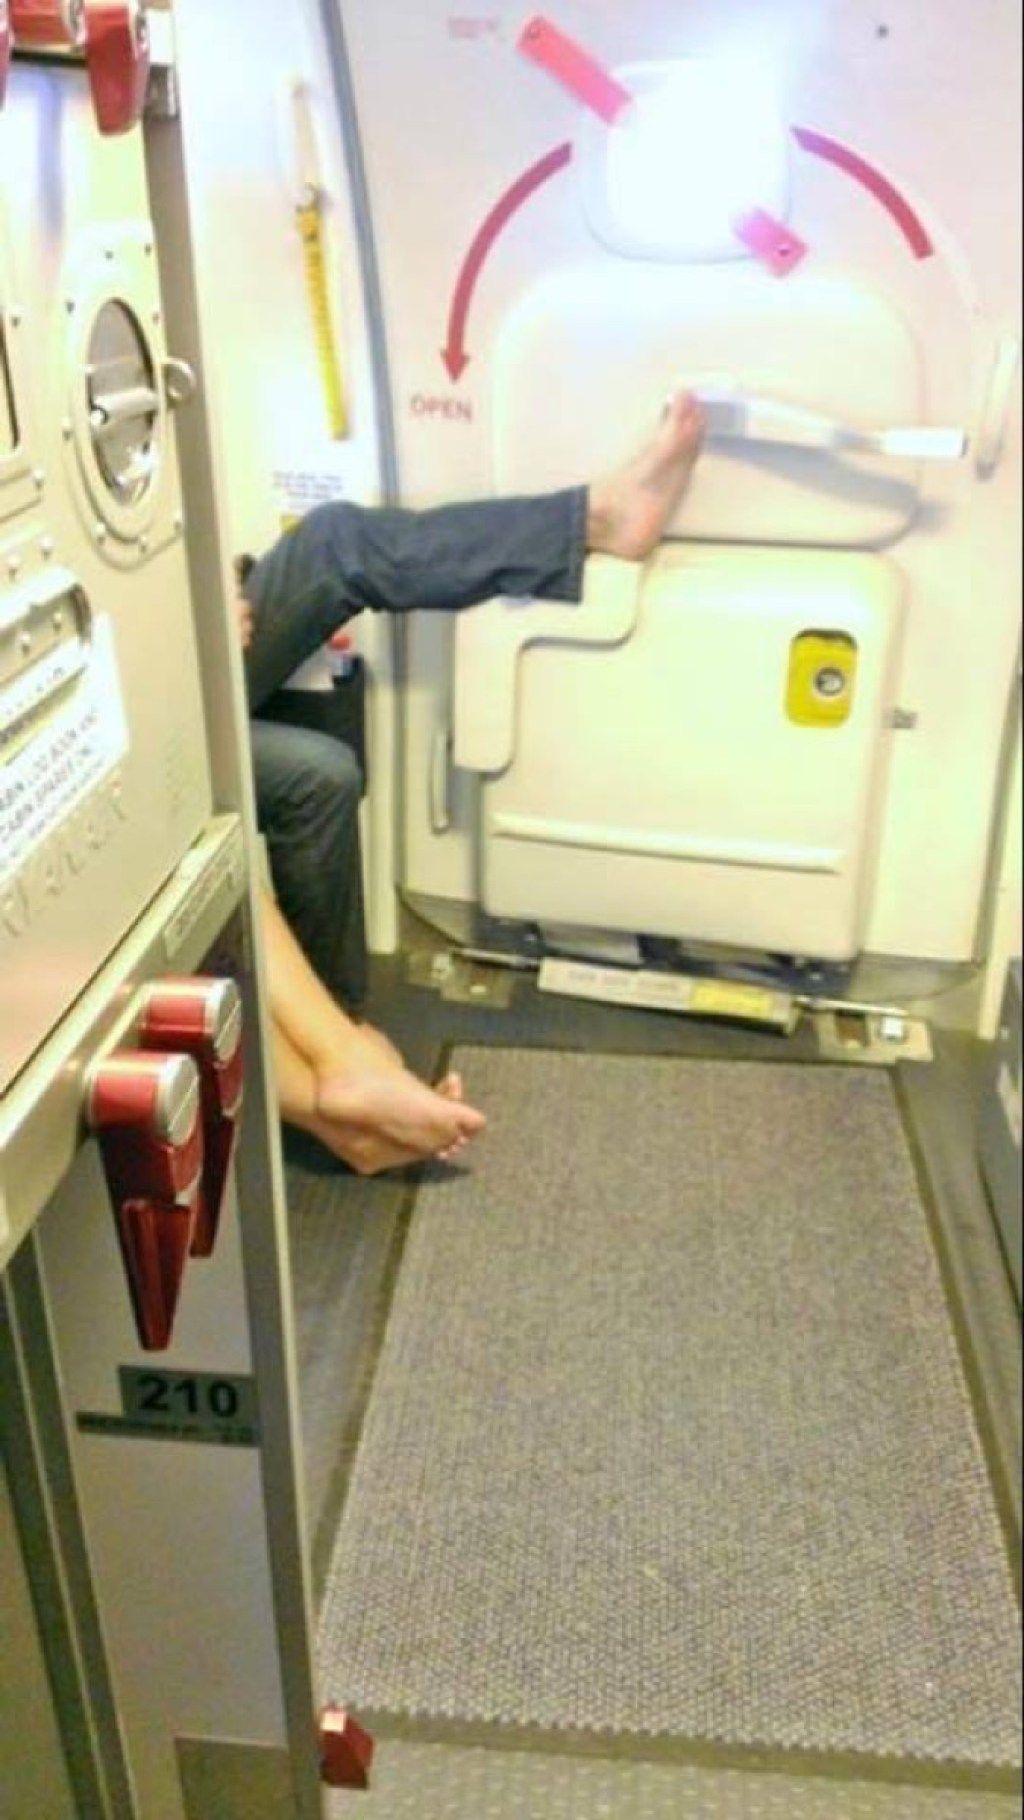 Dodirujuća ručka zrakoplovnog putnika s fotografijama strašnih putnika zrakoplova